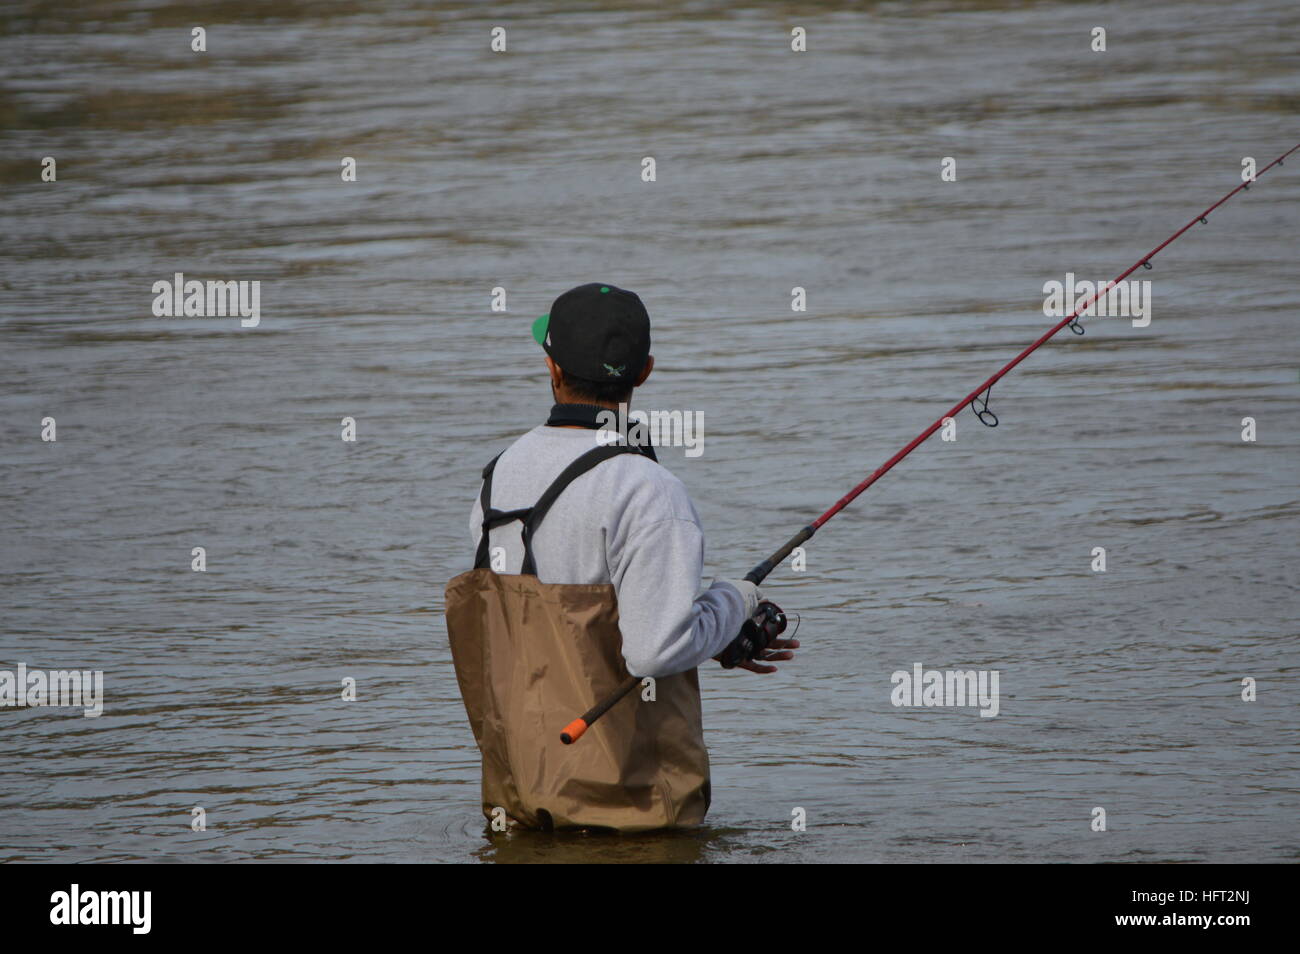 Fisherman casting avec Rod & Reel dans les échassiers à la base de Conowingo barrage sur la rivière Susquehanna, dans le comté de Harford dans le Maryland aux États-Unis. Banque D'Images